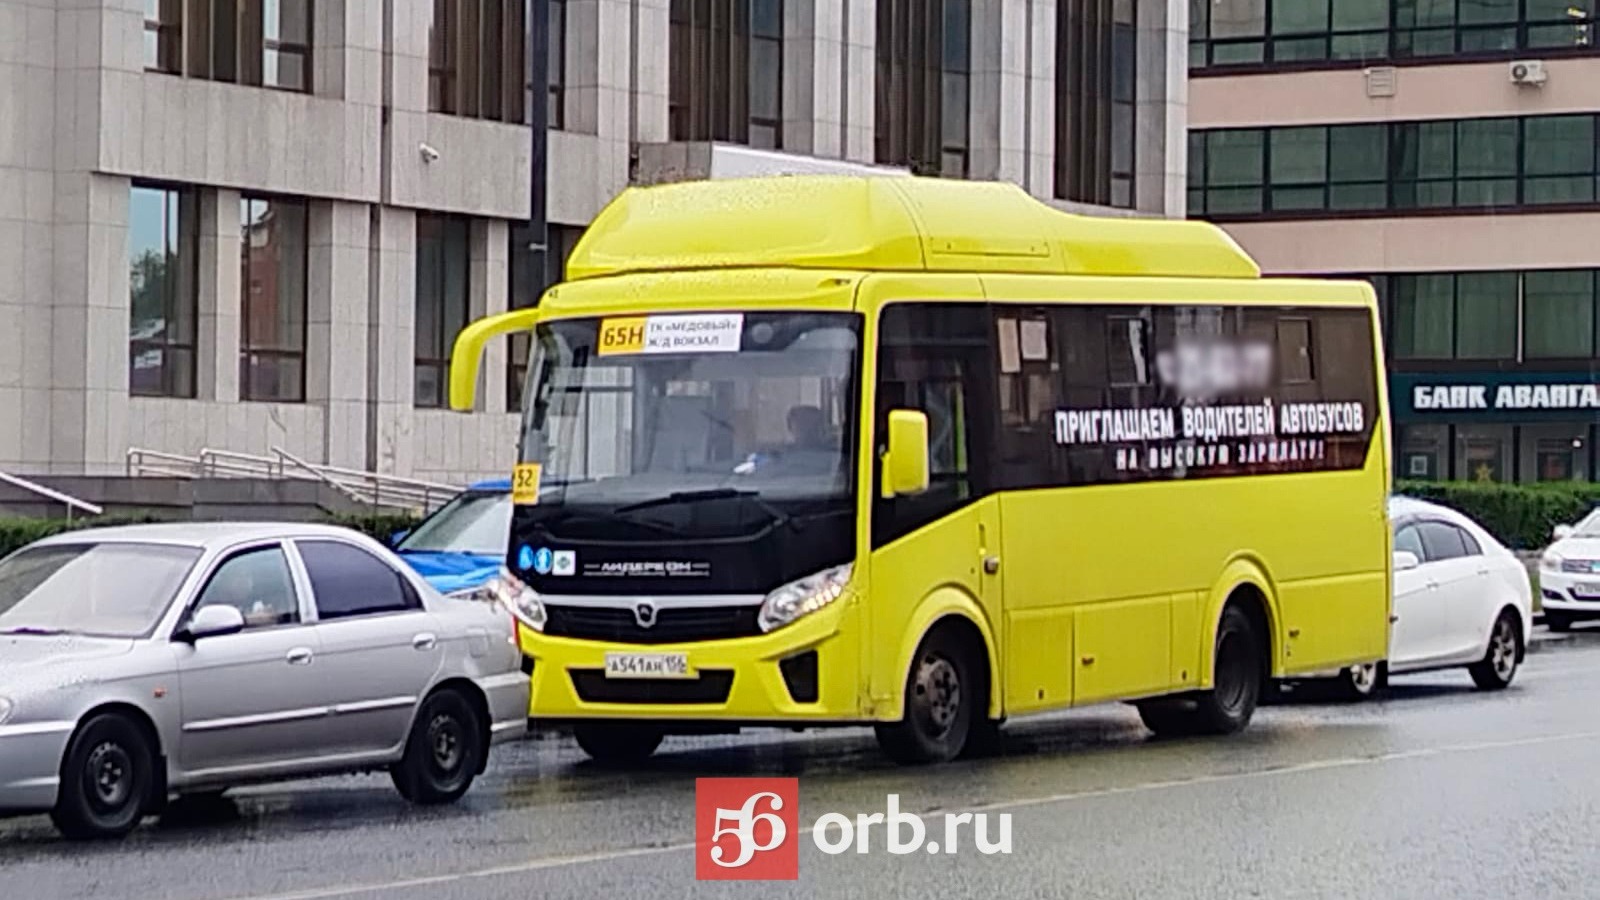 Автобусы с новой нумерацией уже курсируют по улицам Оренбурга